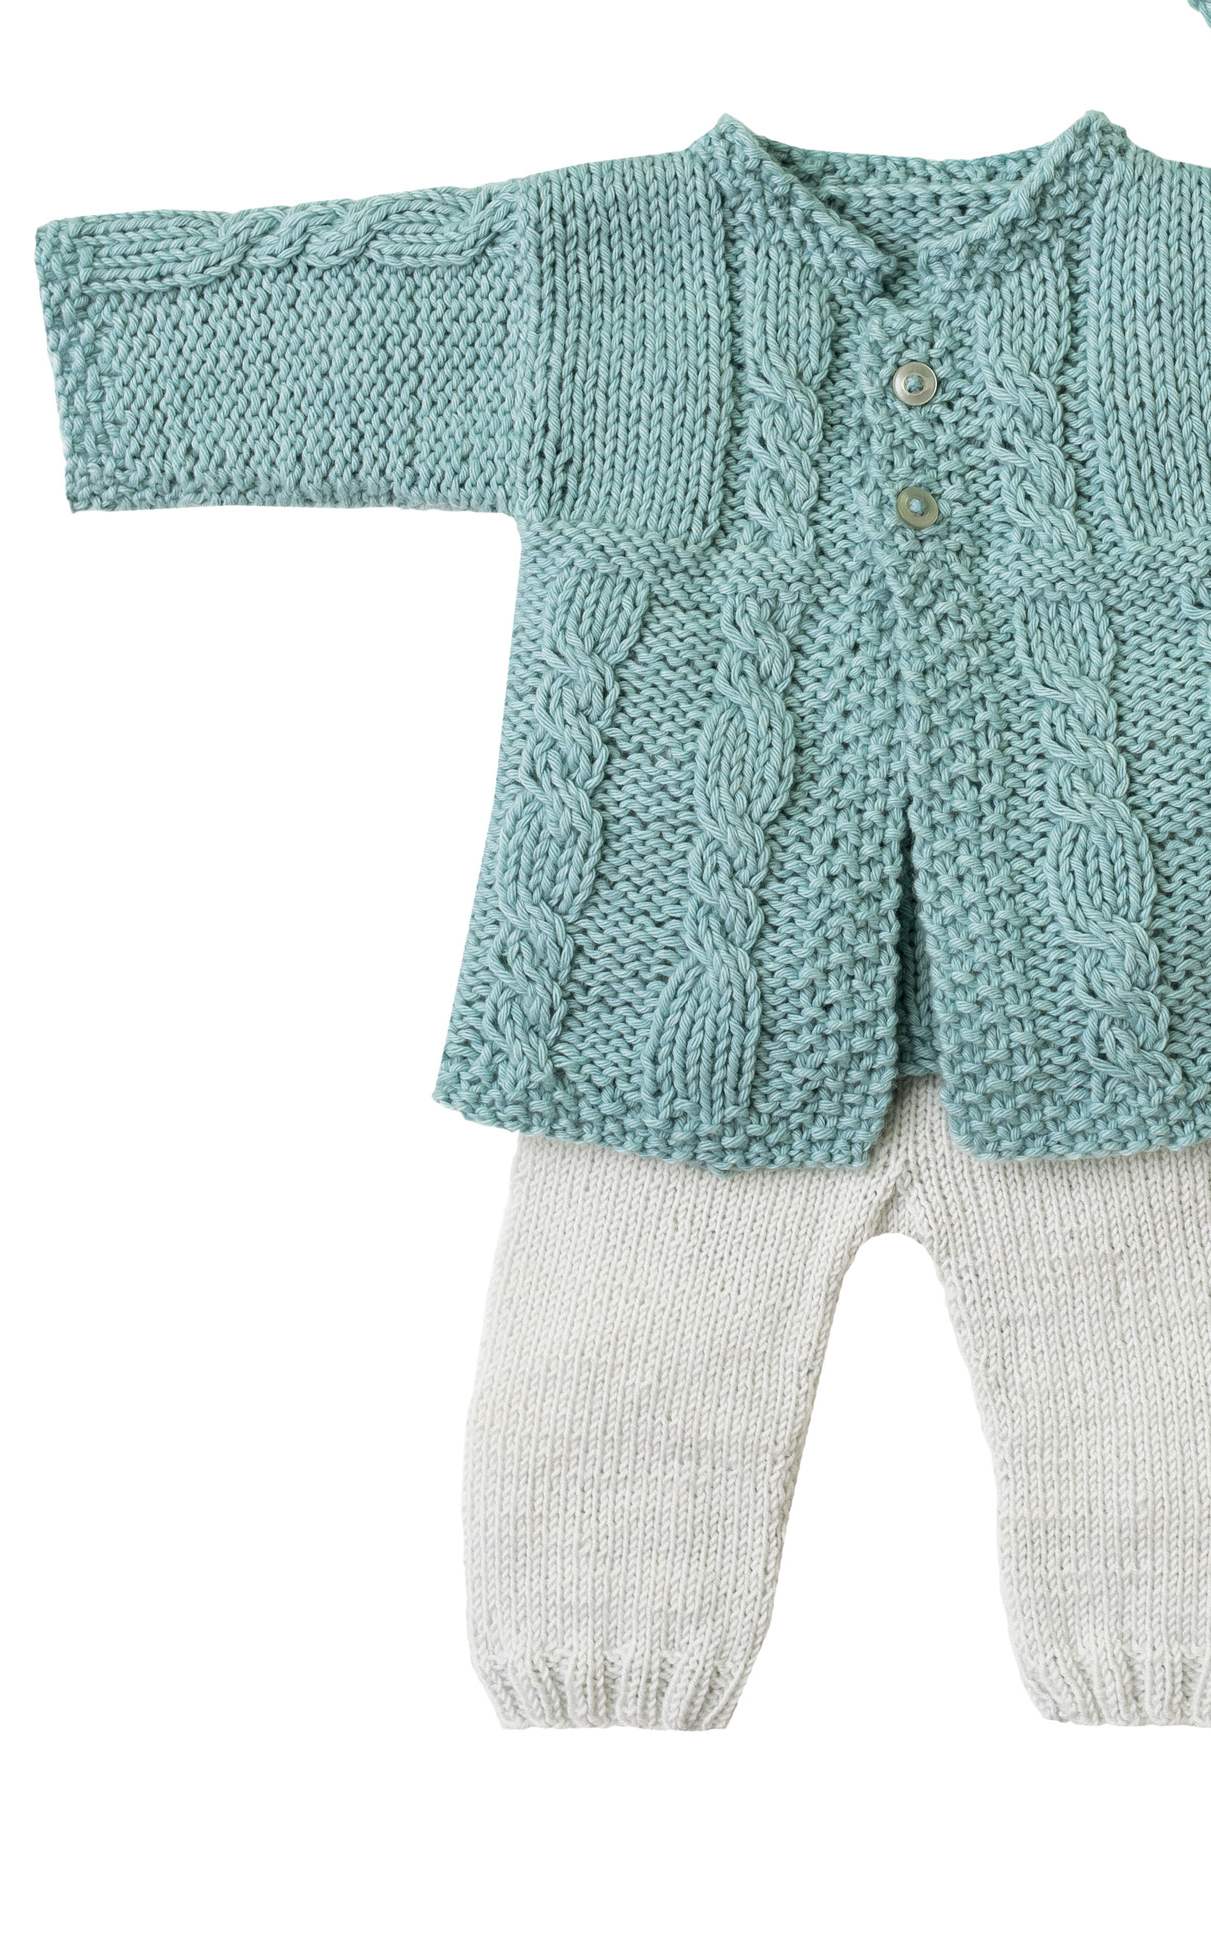 Baby Jacke mit Zopfmuster - Strickset von LANA GROSSA jetzt online kaufen bei OONIQUE